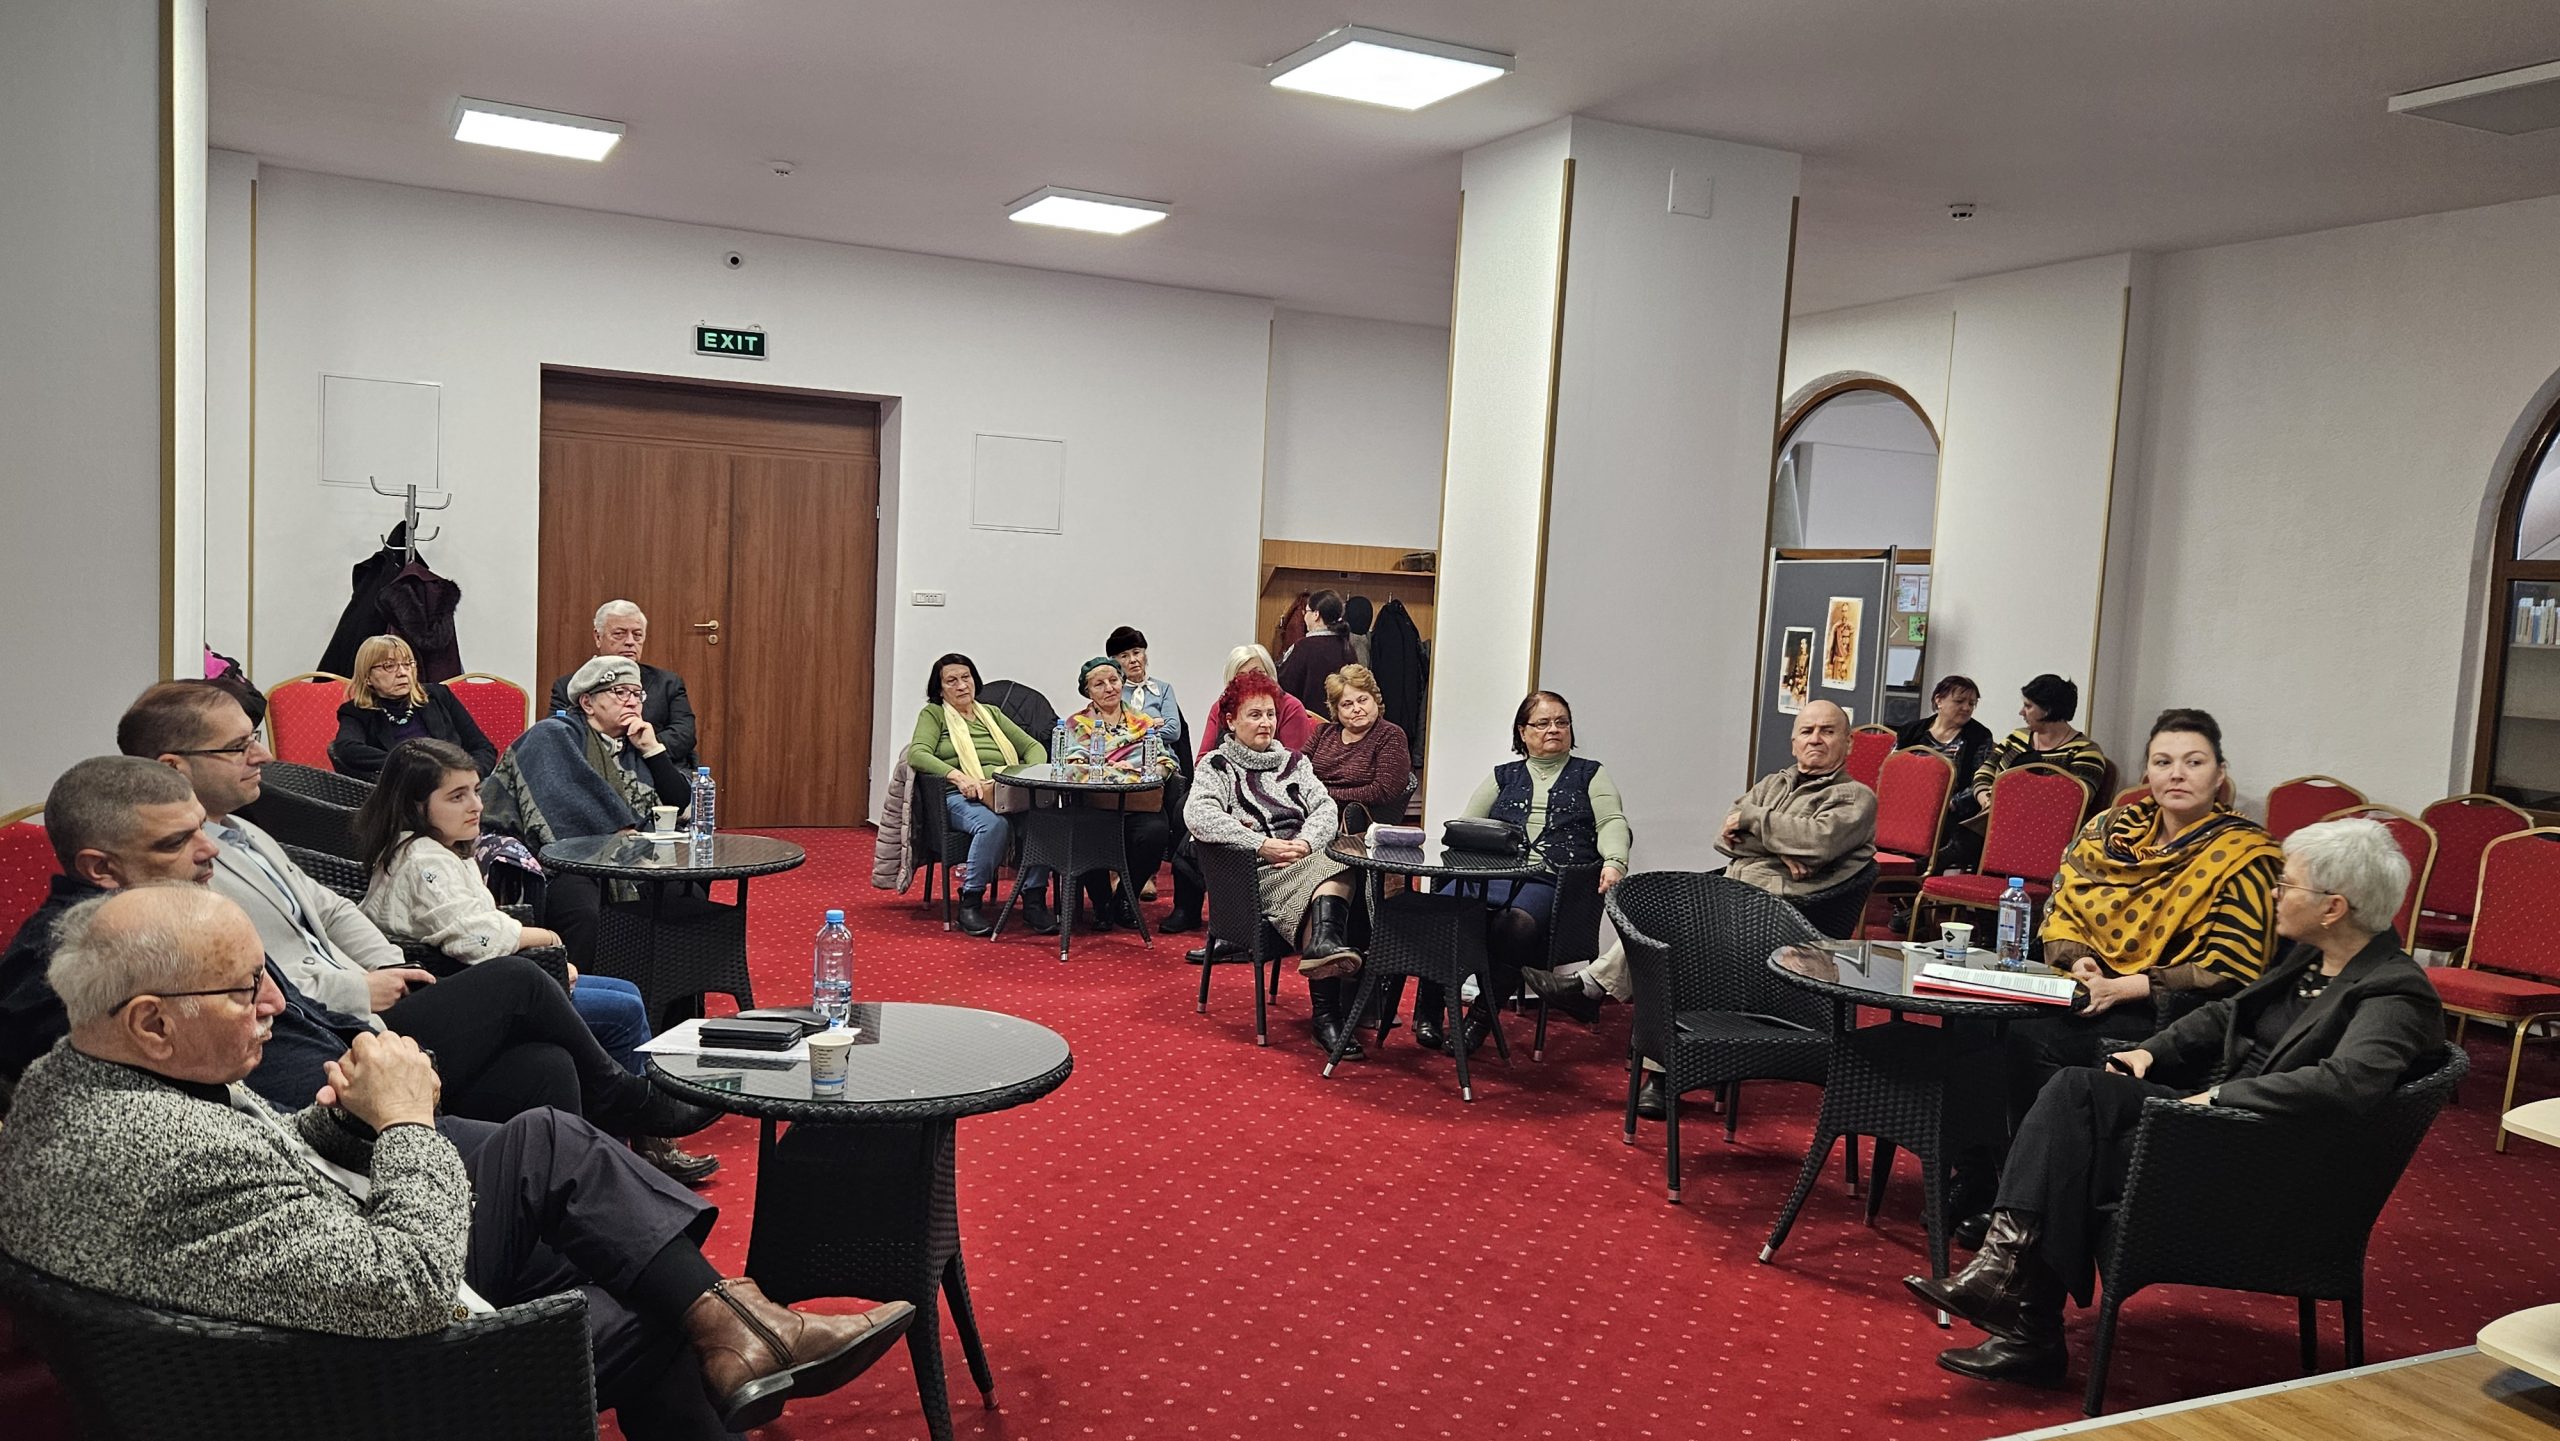 Pe 26 ianuarie, ziua nașterii „mărețului conducător” al României socialiste, la Târgoviște, în orașul unde acesta și-a găsit sfârșitul, discuții despre „Apogeul cultului personalității lui Nicolae Ceaușescu”. Evenimentul, organizat de Consiliul Județean Dâmbovița, în parteneriat cu Asociația EuroTrainer, în cadrul proiectului „Conservarea, restaurarea, valorificarea clădirii Fosta Școală de Cavalerie în vederea consolidării identității culturale a județului Dâmbovița”